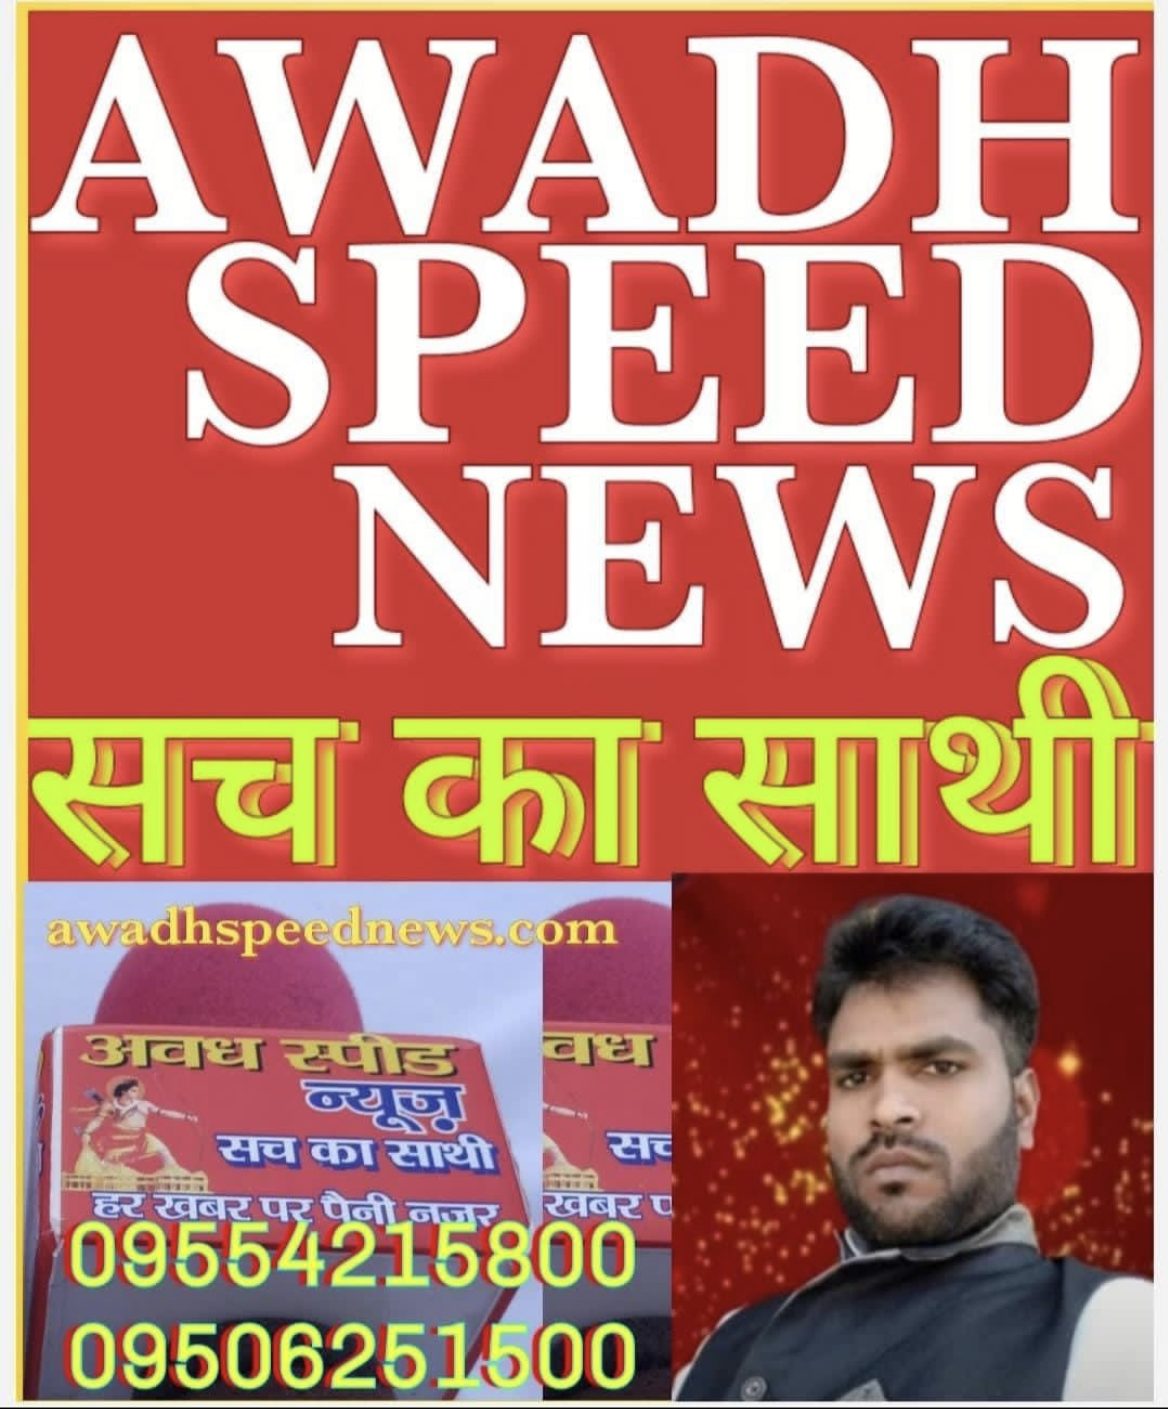 Awadh Speed News